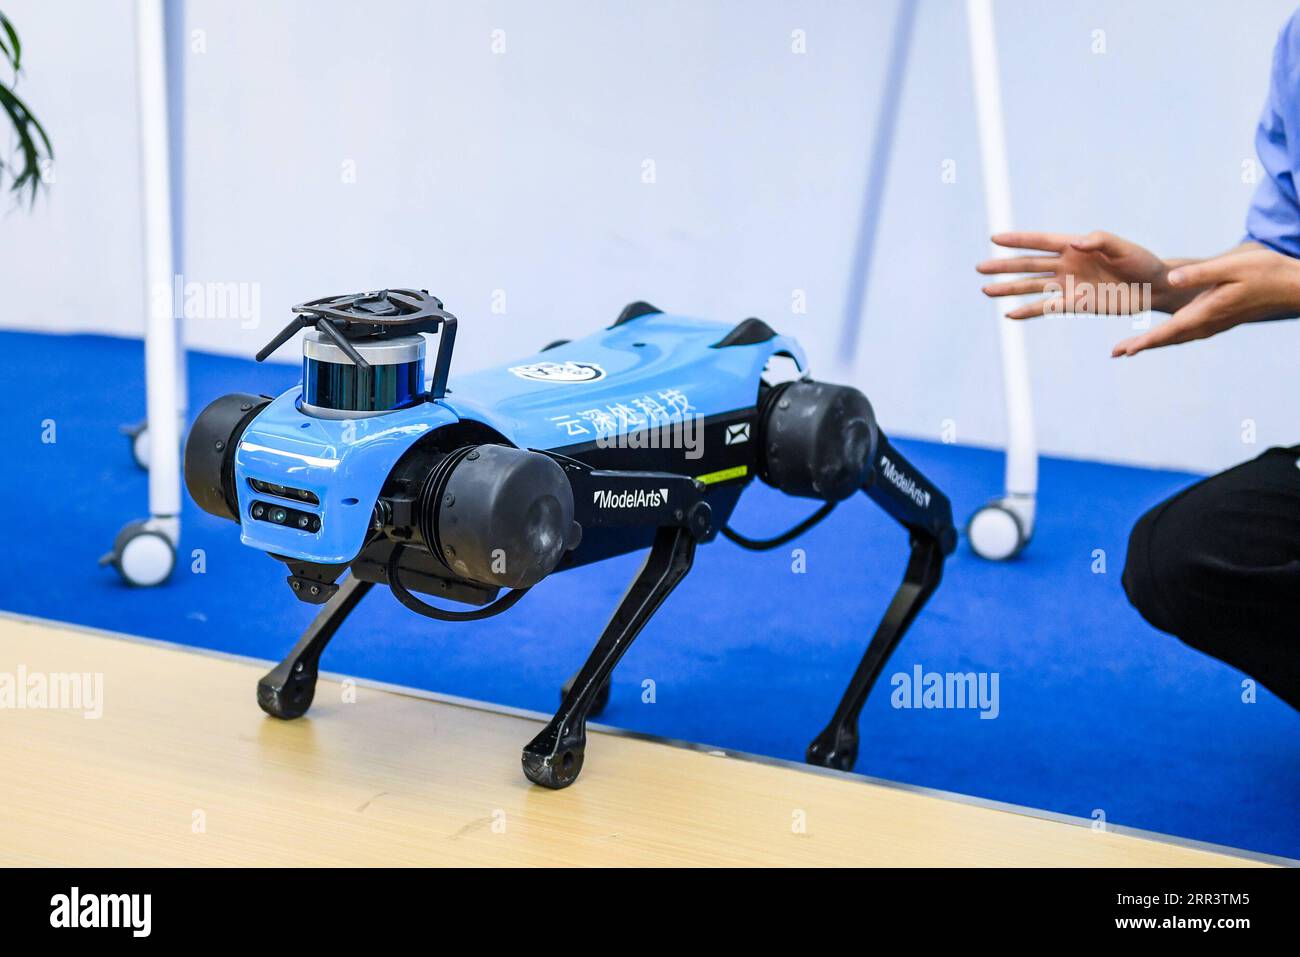 201111 -- SHENZHEN, le 11 novembre 2020 -- Un chien robotique est vu à la 22e foire chinoise Hi-Tech CHTF qui s'est tenue à Shenzhen, dans la province du Guangdong du sud de la Chine, le 11 novembre 2020. Le 22e CHTF a débuté mercredi dans le centre technologique du sud de la Chine, Shenzhen, avec plus de 3 300 exposants en ligne et hors ligne de la maison et de l étranger, présentant quelque 10 000 produits technologiques époustouflants. Sur le thème transformer l'avenir avec la technologie et stimuler le développement avec l'innovation, le CHTF de cette année présentera les dernières réalisations en biomédecine, en soins médicaux intelligents, en éducation en ligne et dans d'autres industries émergentes. Il le fera Banque D'Images